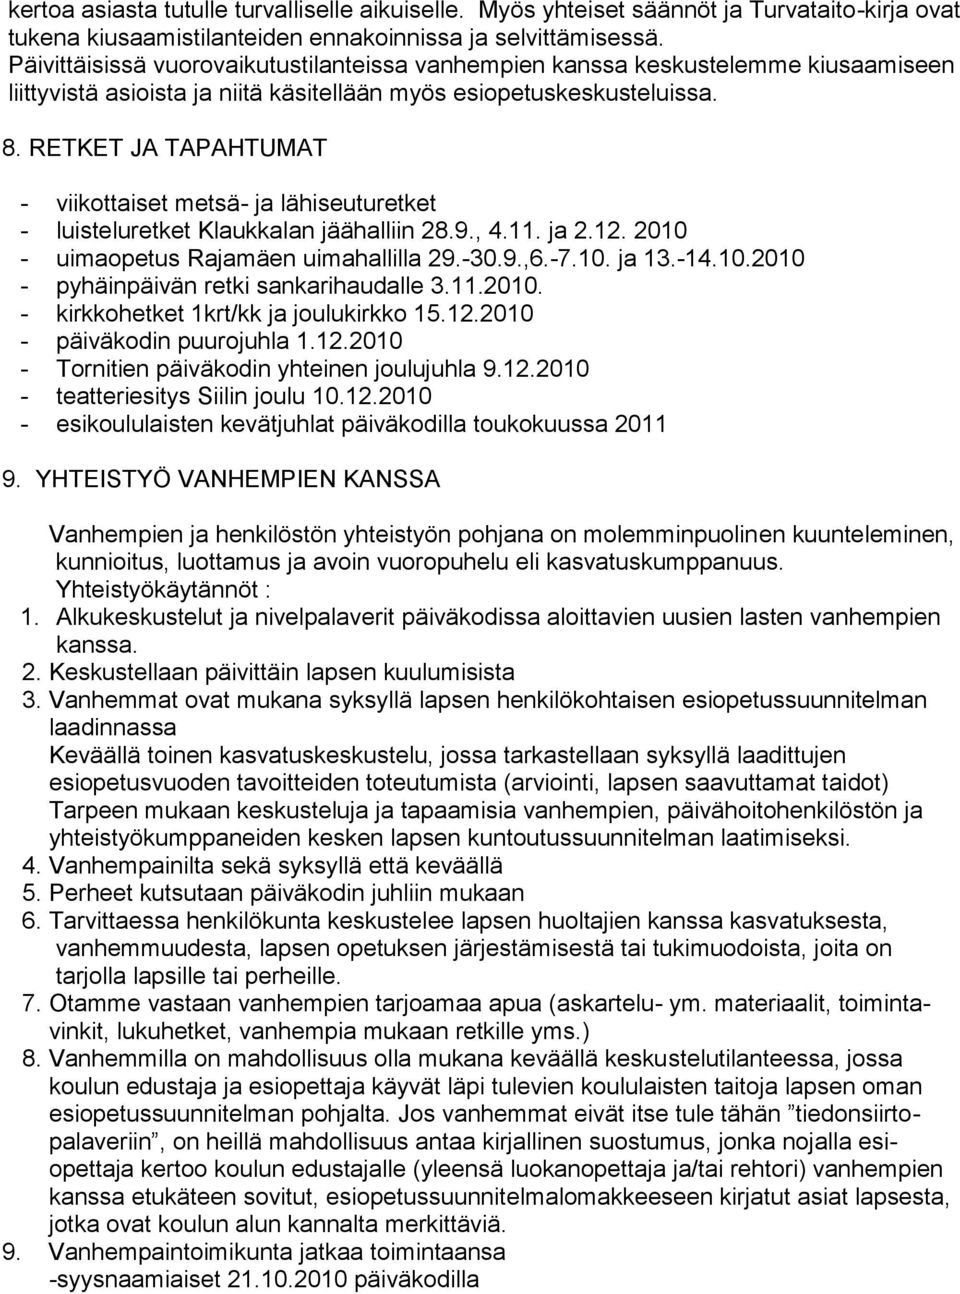 RETKET JA TAPAHTUMAT - viikottaiset metsä- ja lähiseuturetket - luisteluretket Klaukkalan jäähalliin 28.9., 4.11. ja 2.12. 2010 - uimaopetus Rajamäen uimahallilla 29.-30.9.,6.-7.10. ja 13.-14.10.2010 - pyhäinpäivän retki sankarihaudalle 3.